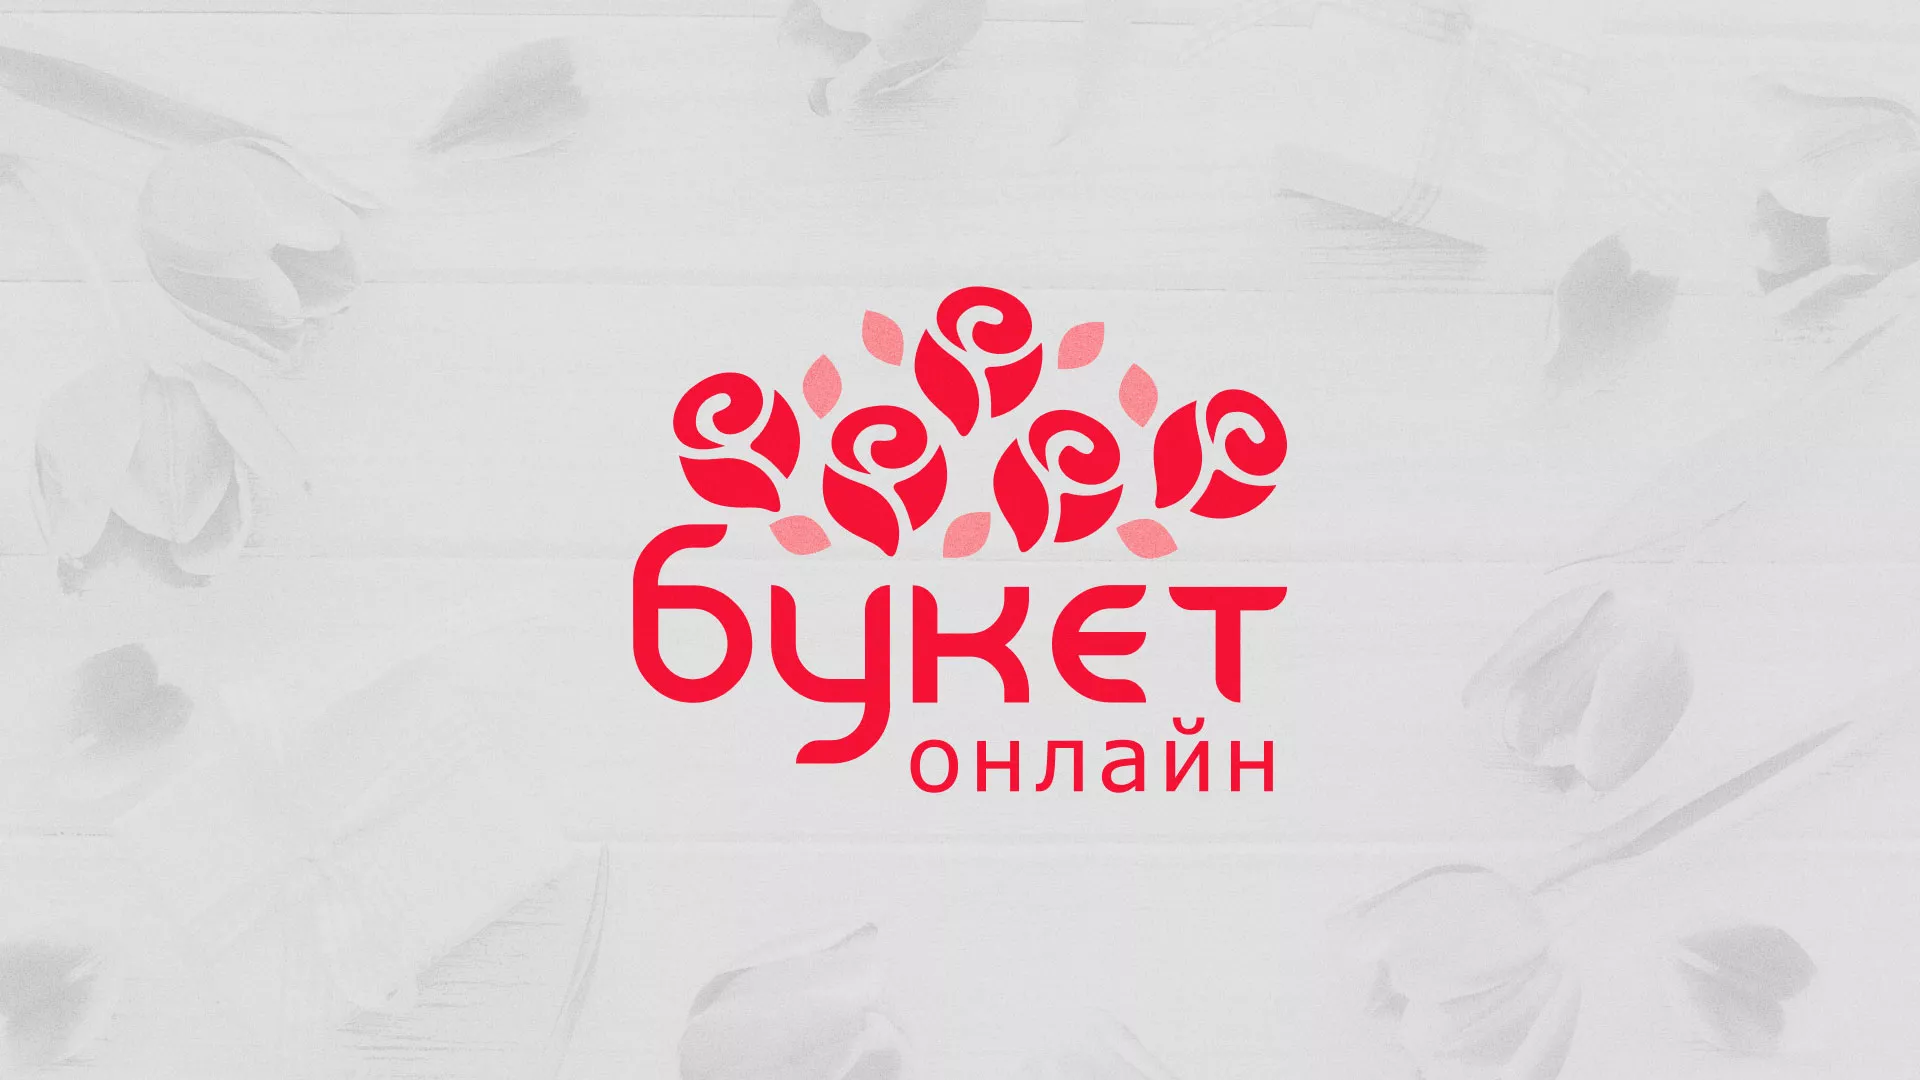 Создание интернет-магазина «Букет-онлайн» по цветам в Волхове